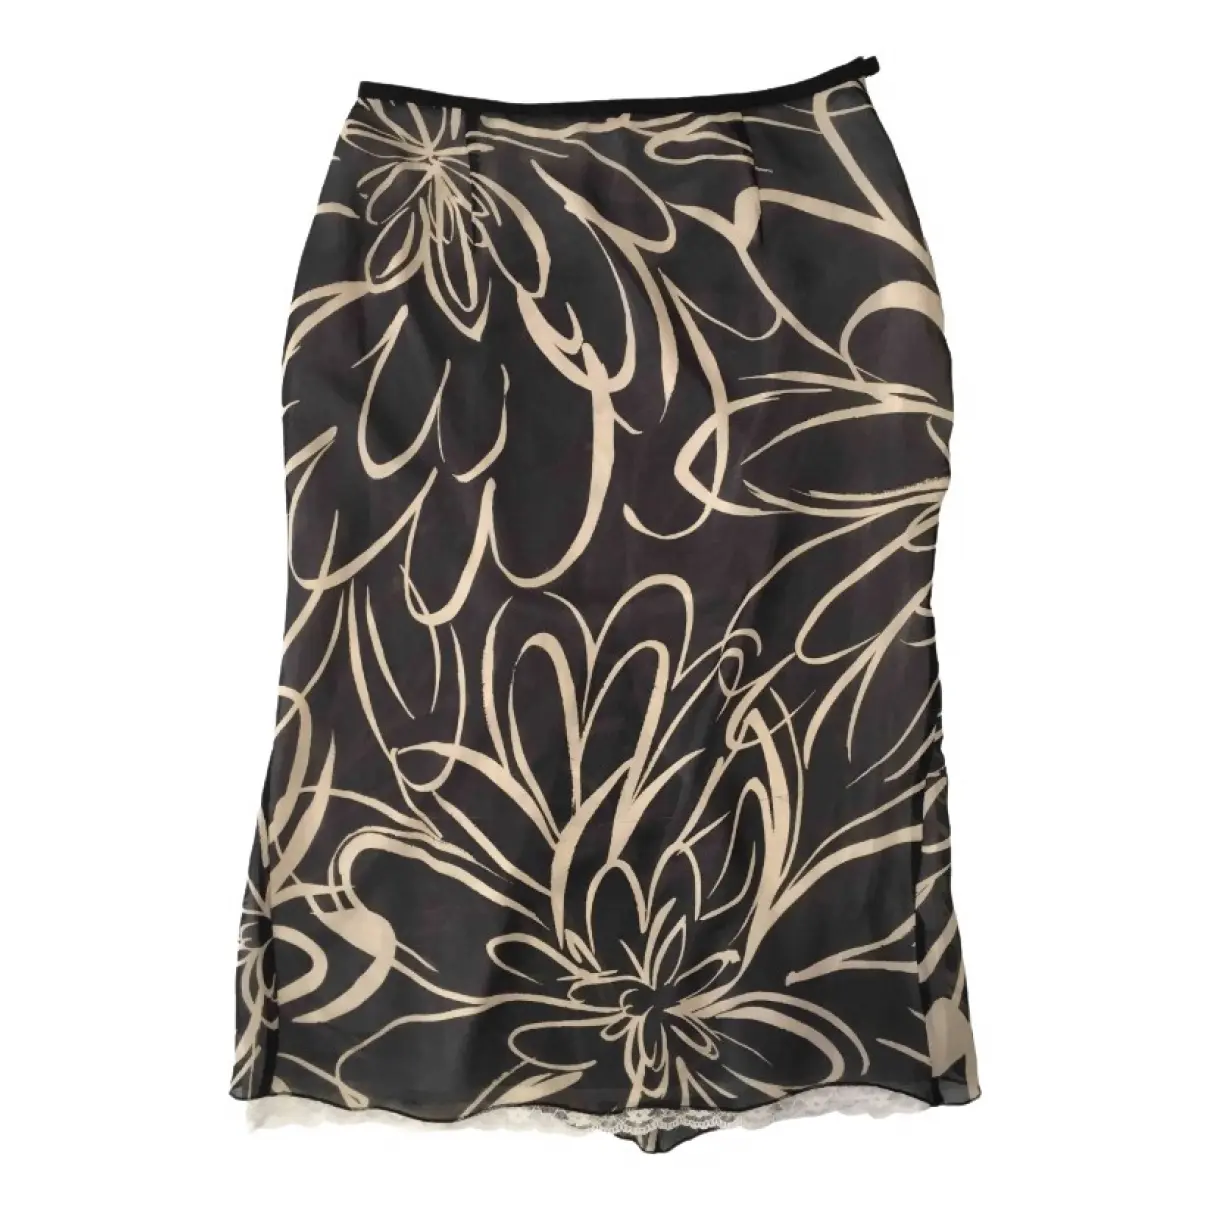 Silk mid-length skirt Paul Smith